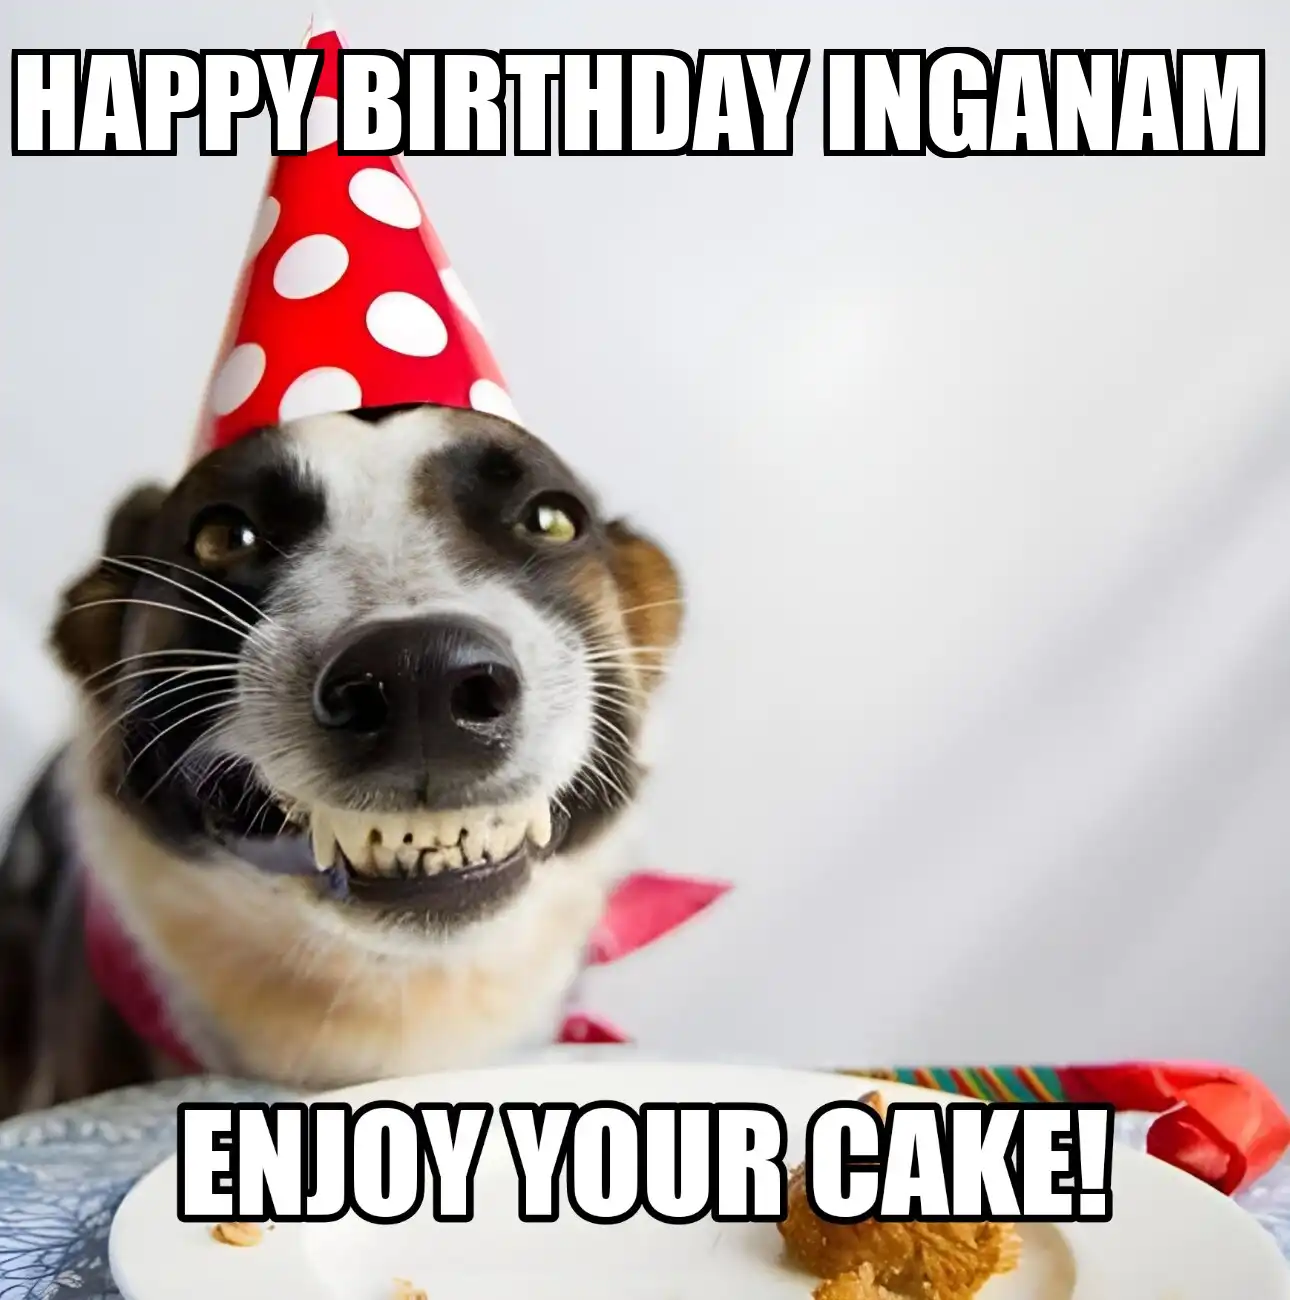 Happy Birthday Inganam Enjoy Your Cake Dog Meme